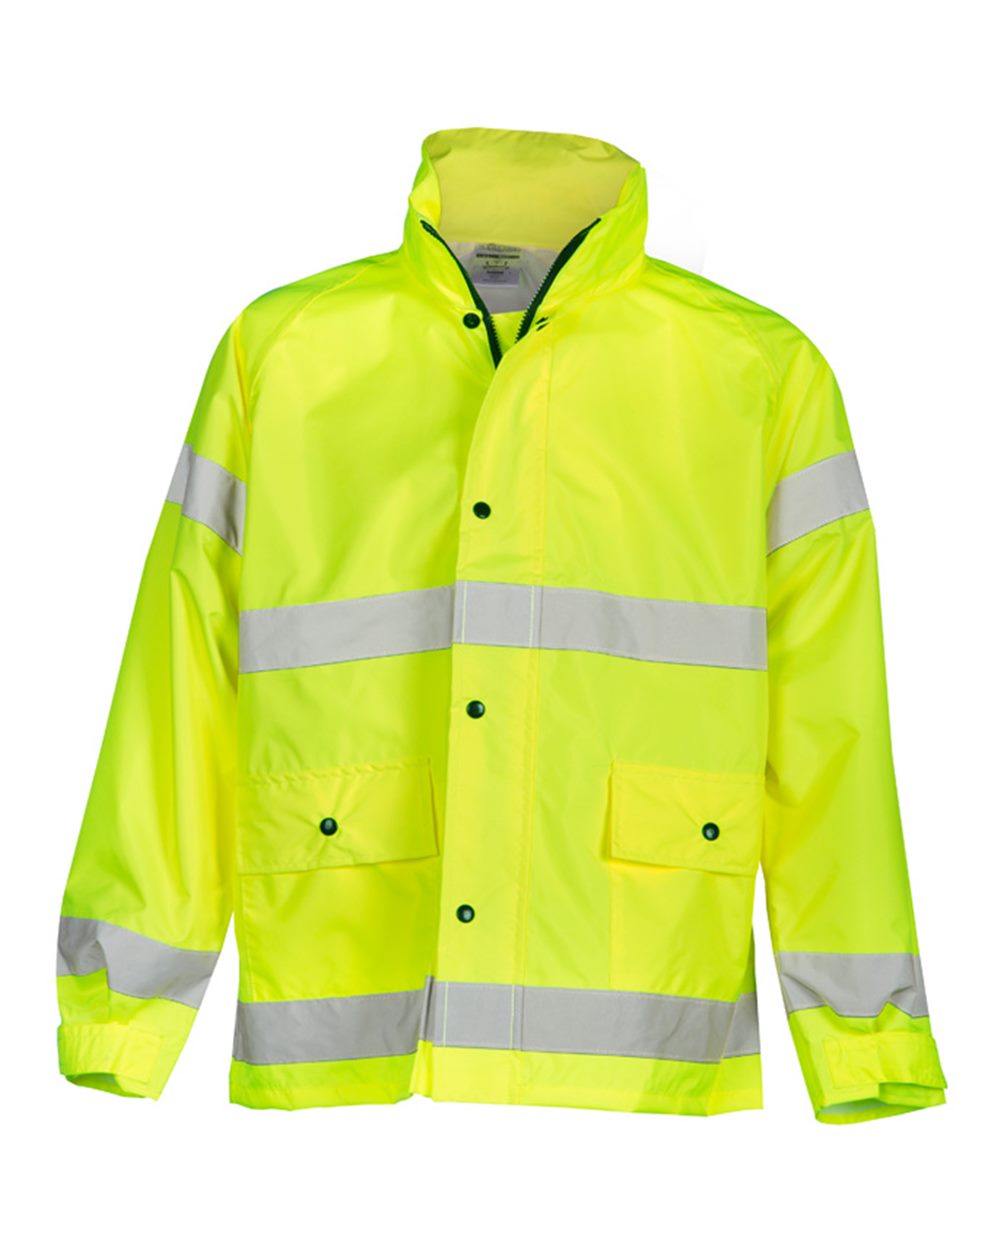 Storm Stopper Rainwear Jacket-